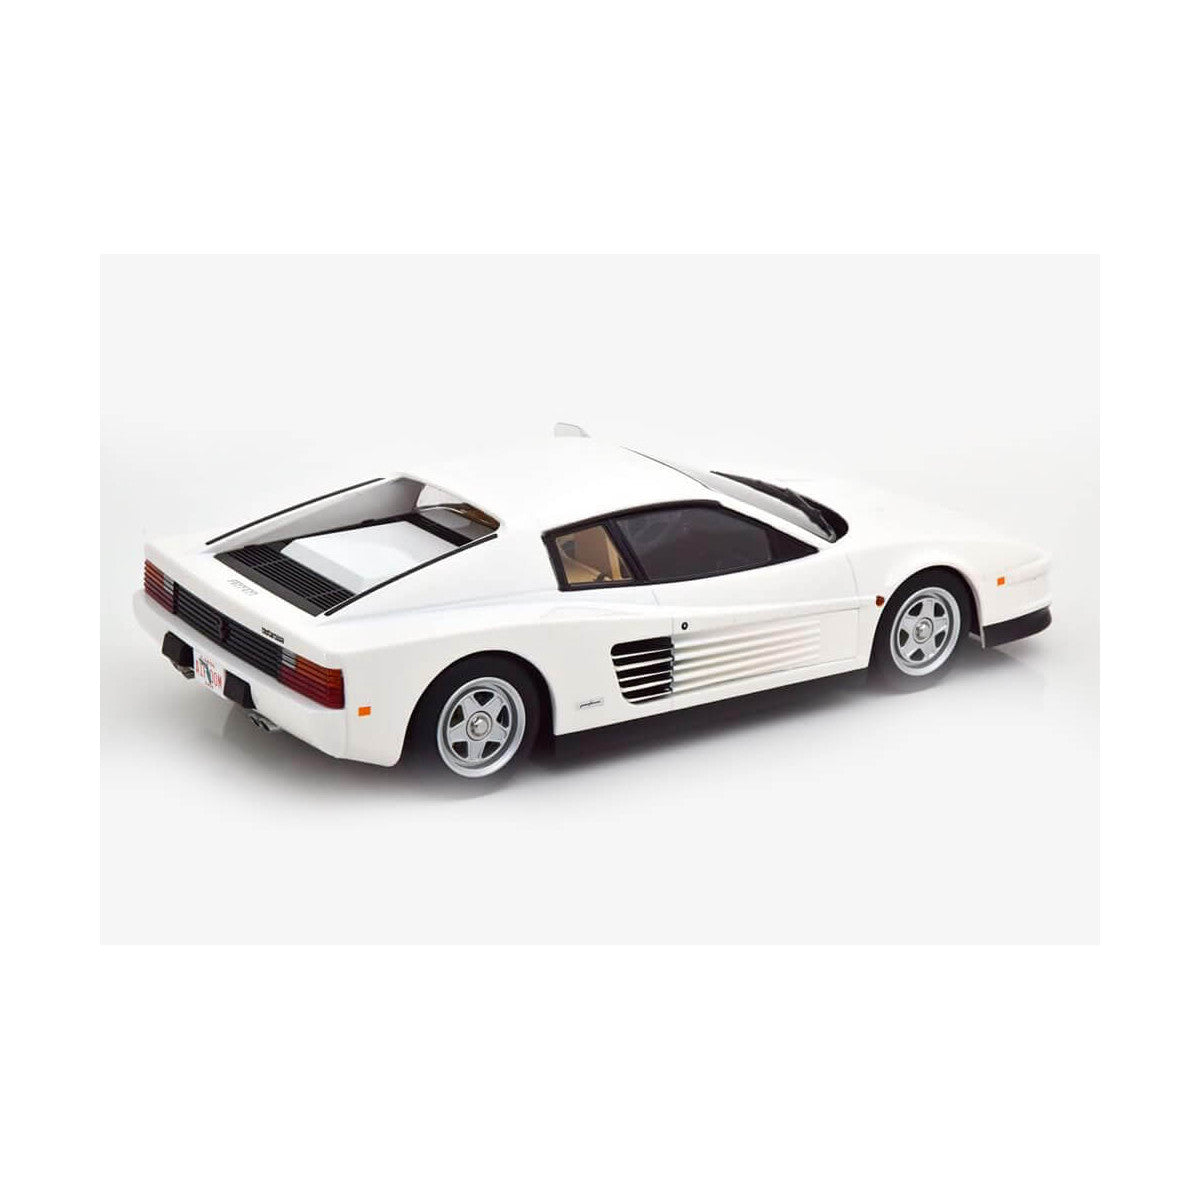 KK Scale Ferrari Testarossa White Monospecchio 1984 US-Version 1:18